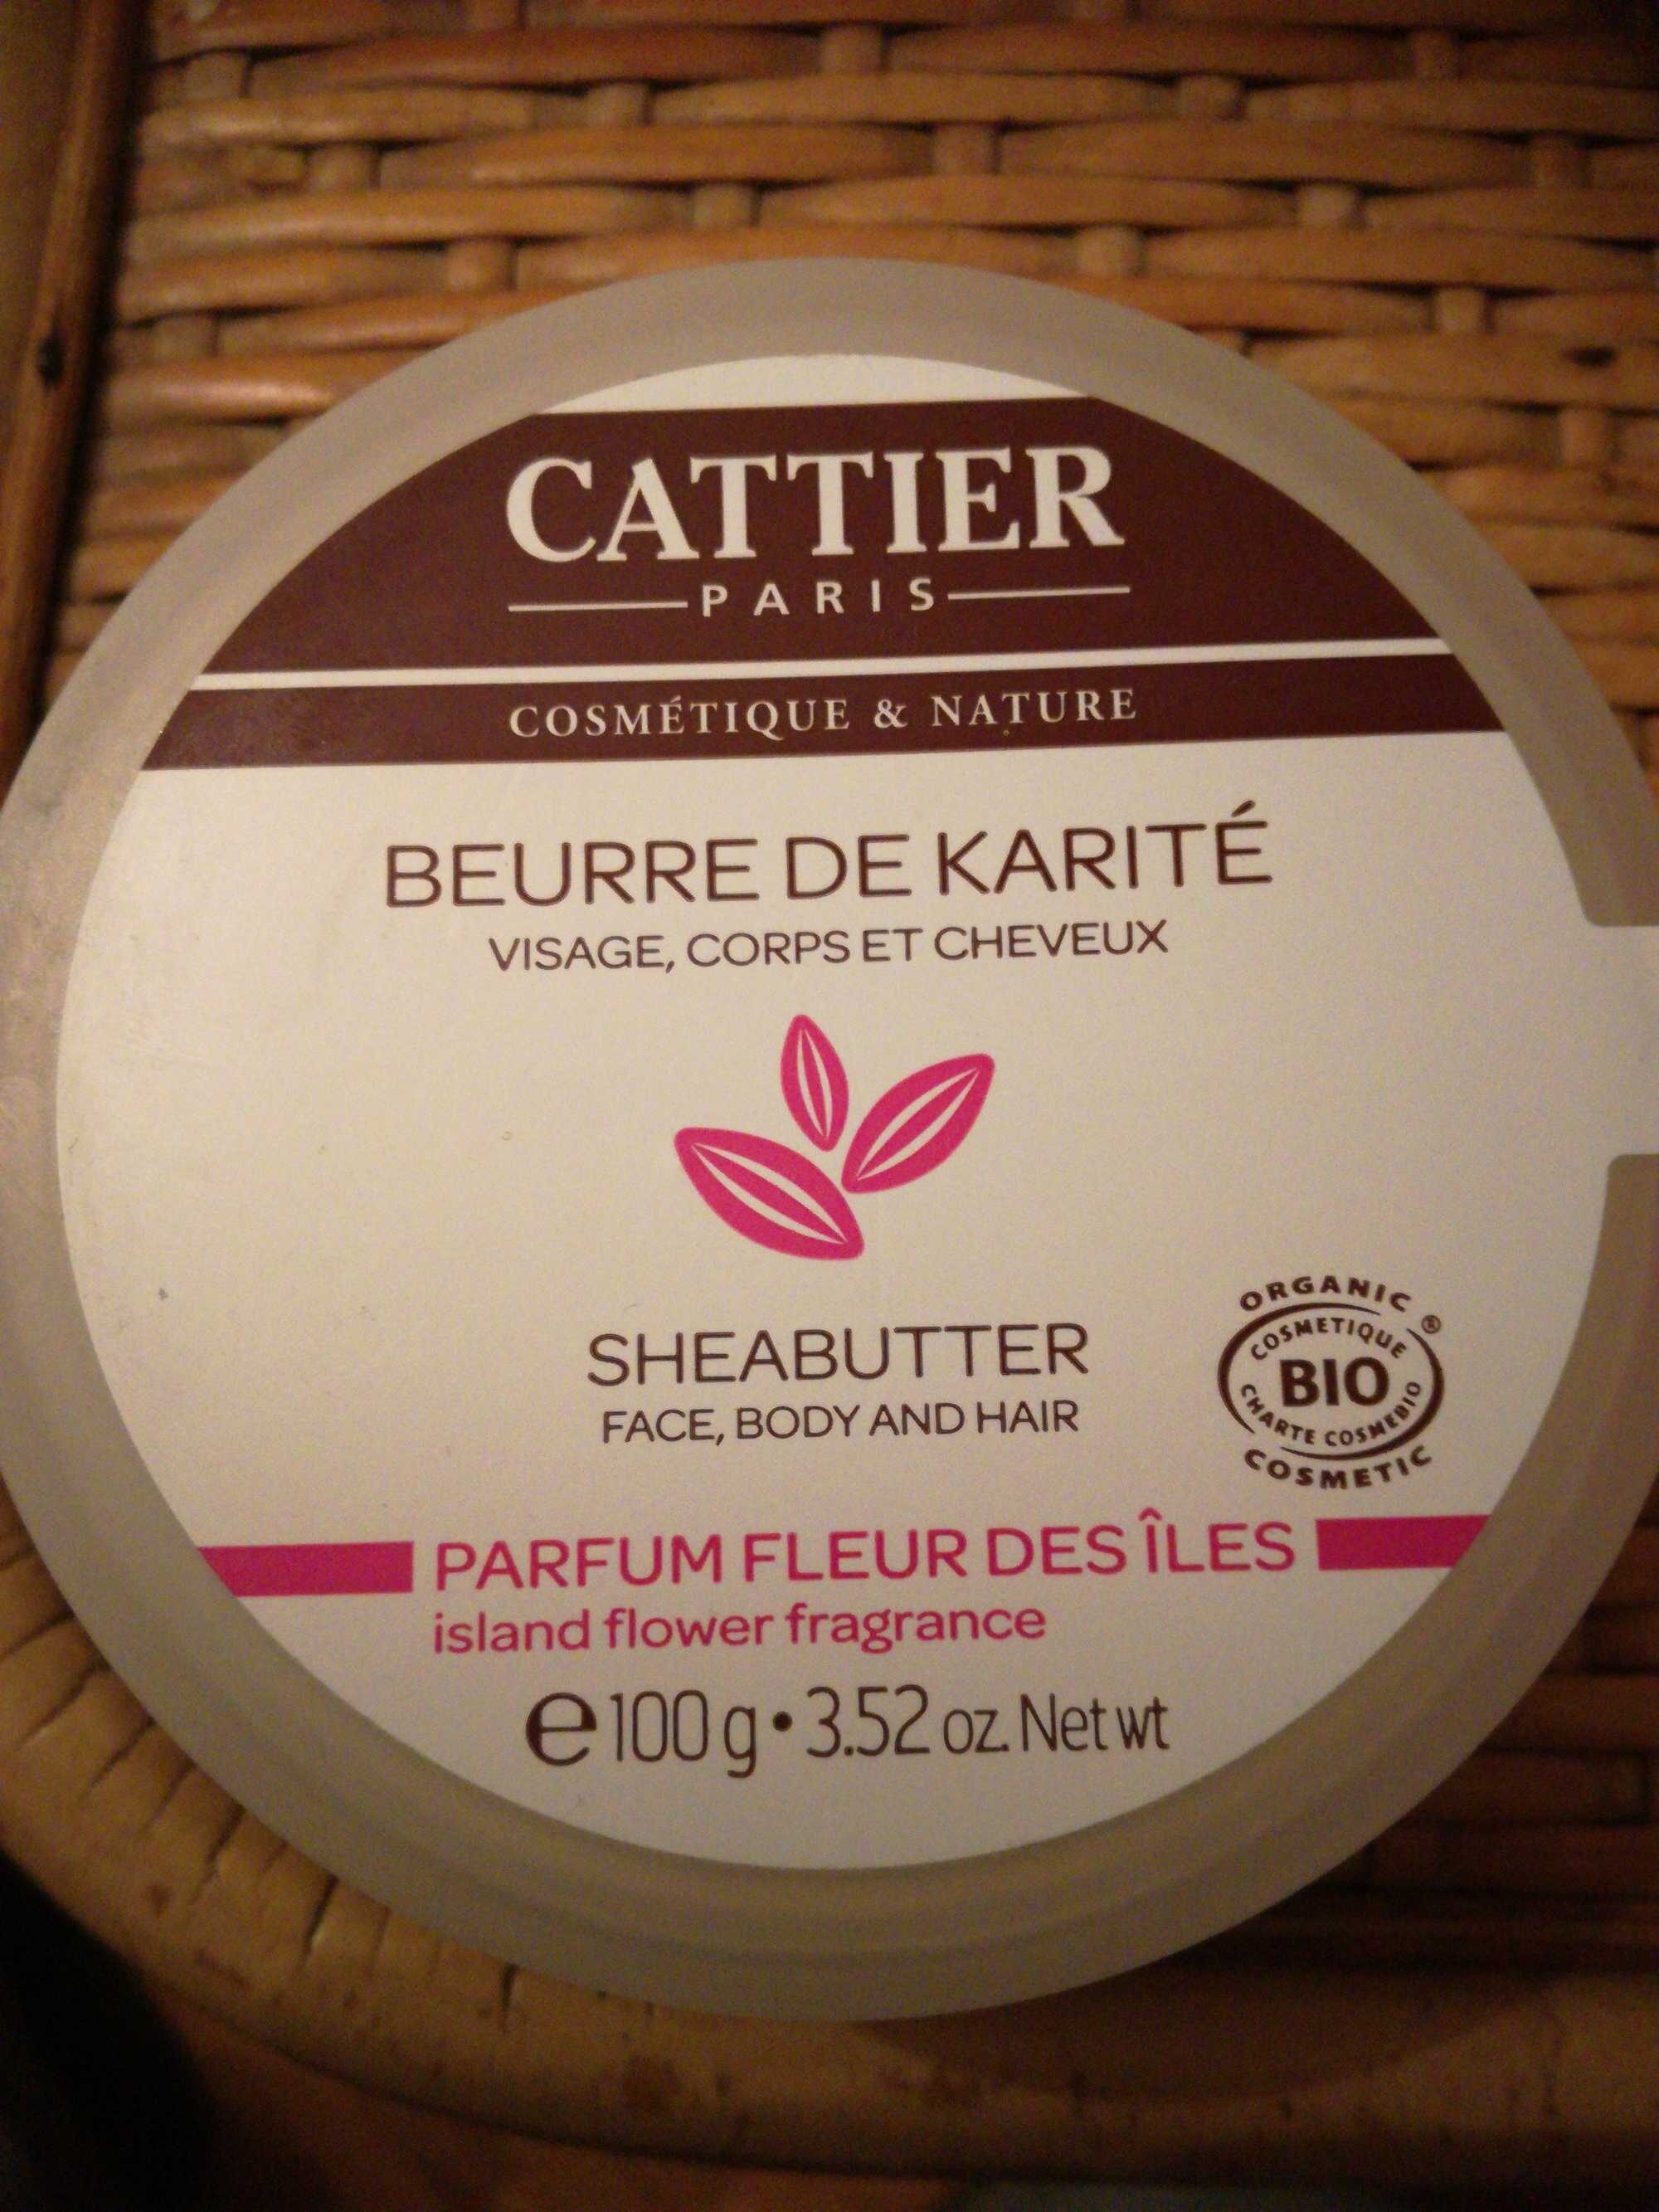 Beurre de karité parfum fleur des îles - Product - en